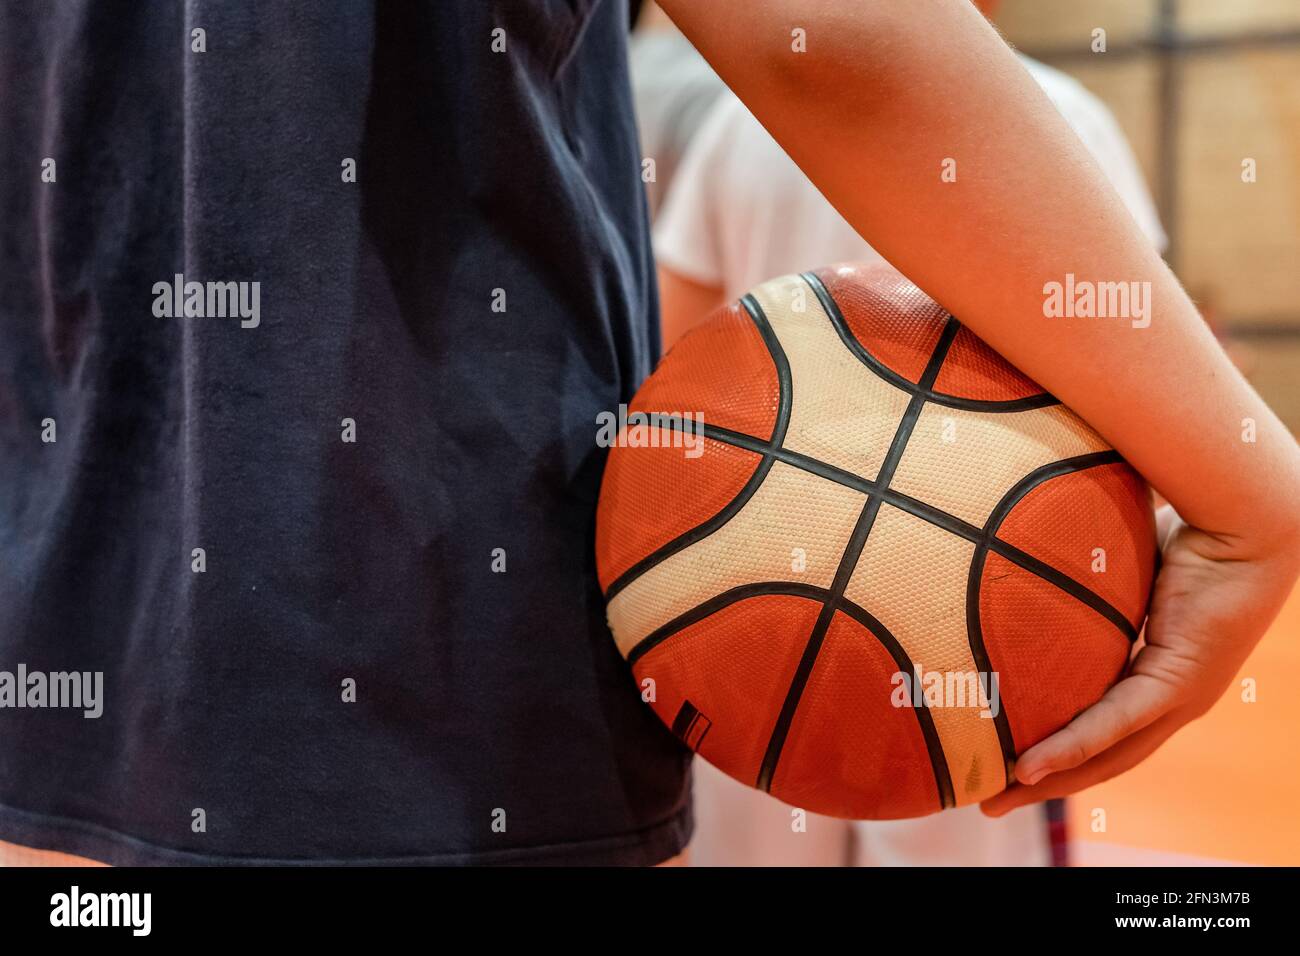 Primer plano en la pelota de baloncesto en manos de un desconocido caucásico niño adolescente que lo sostiene en el entrenamiento o esperando que juego juegue al desarrollo deportivo Fotografía